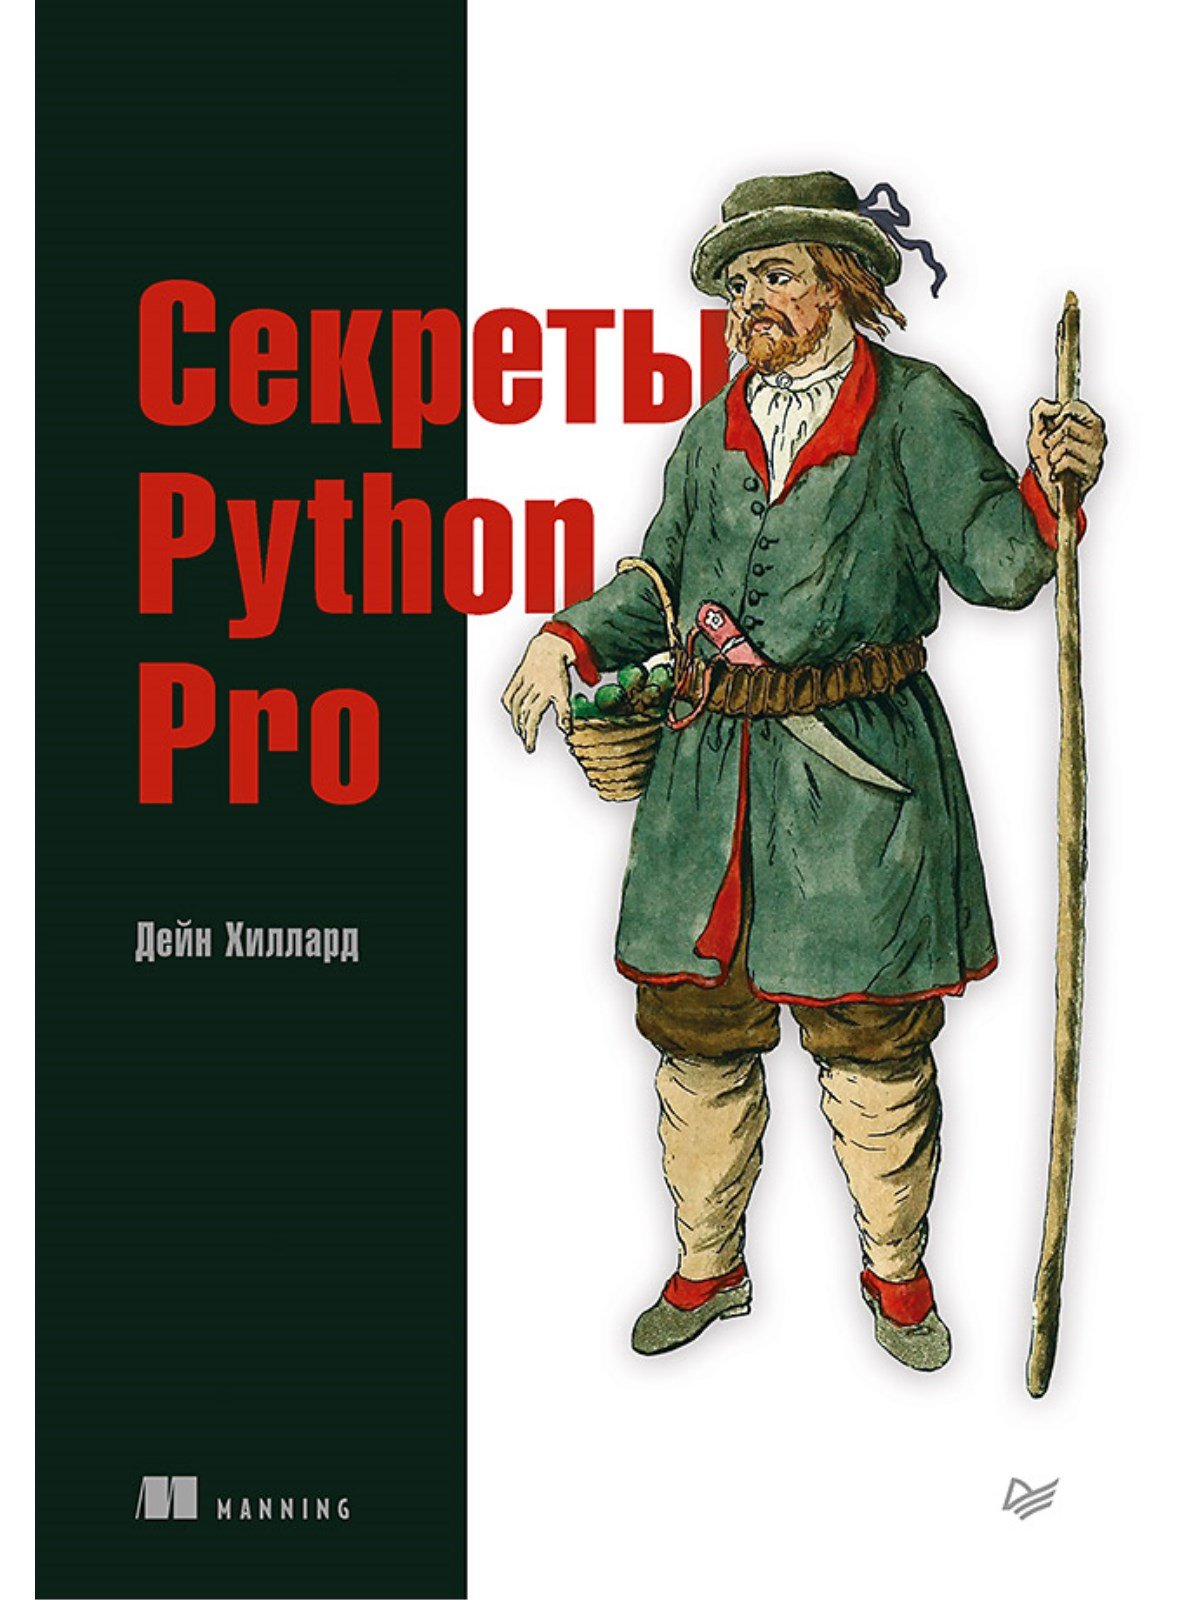  Python Pro